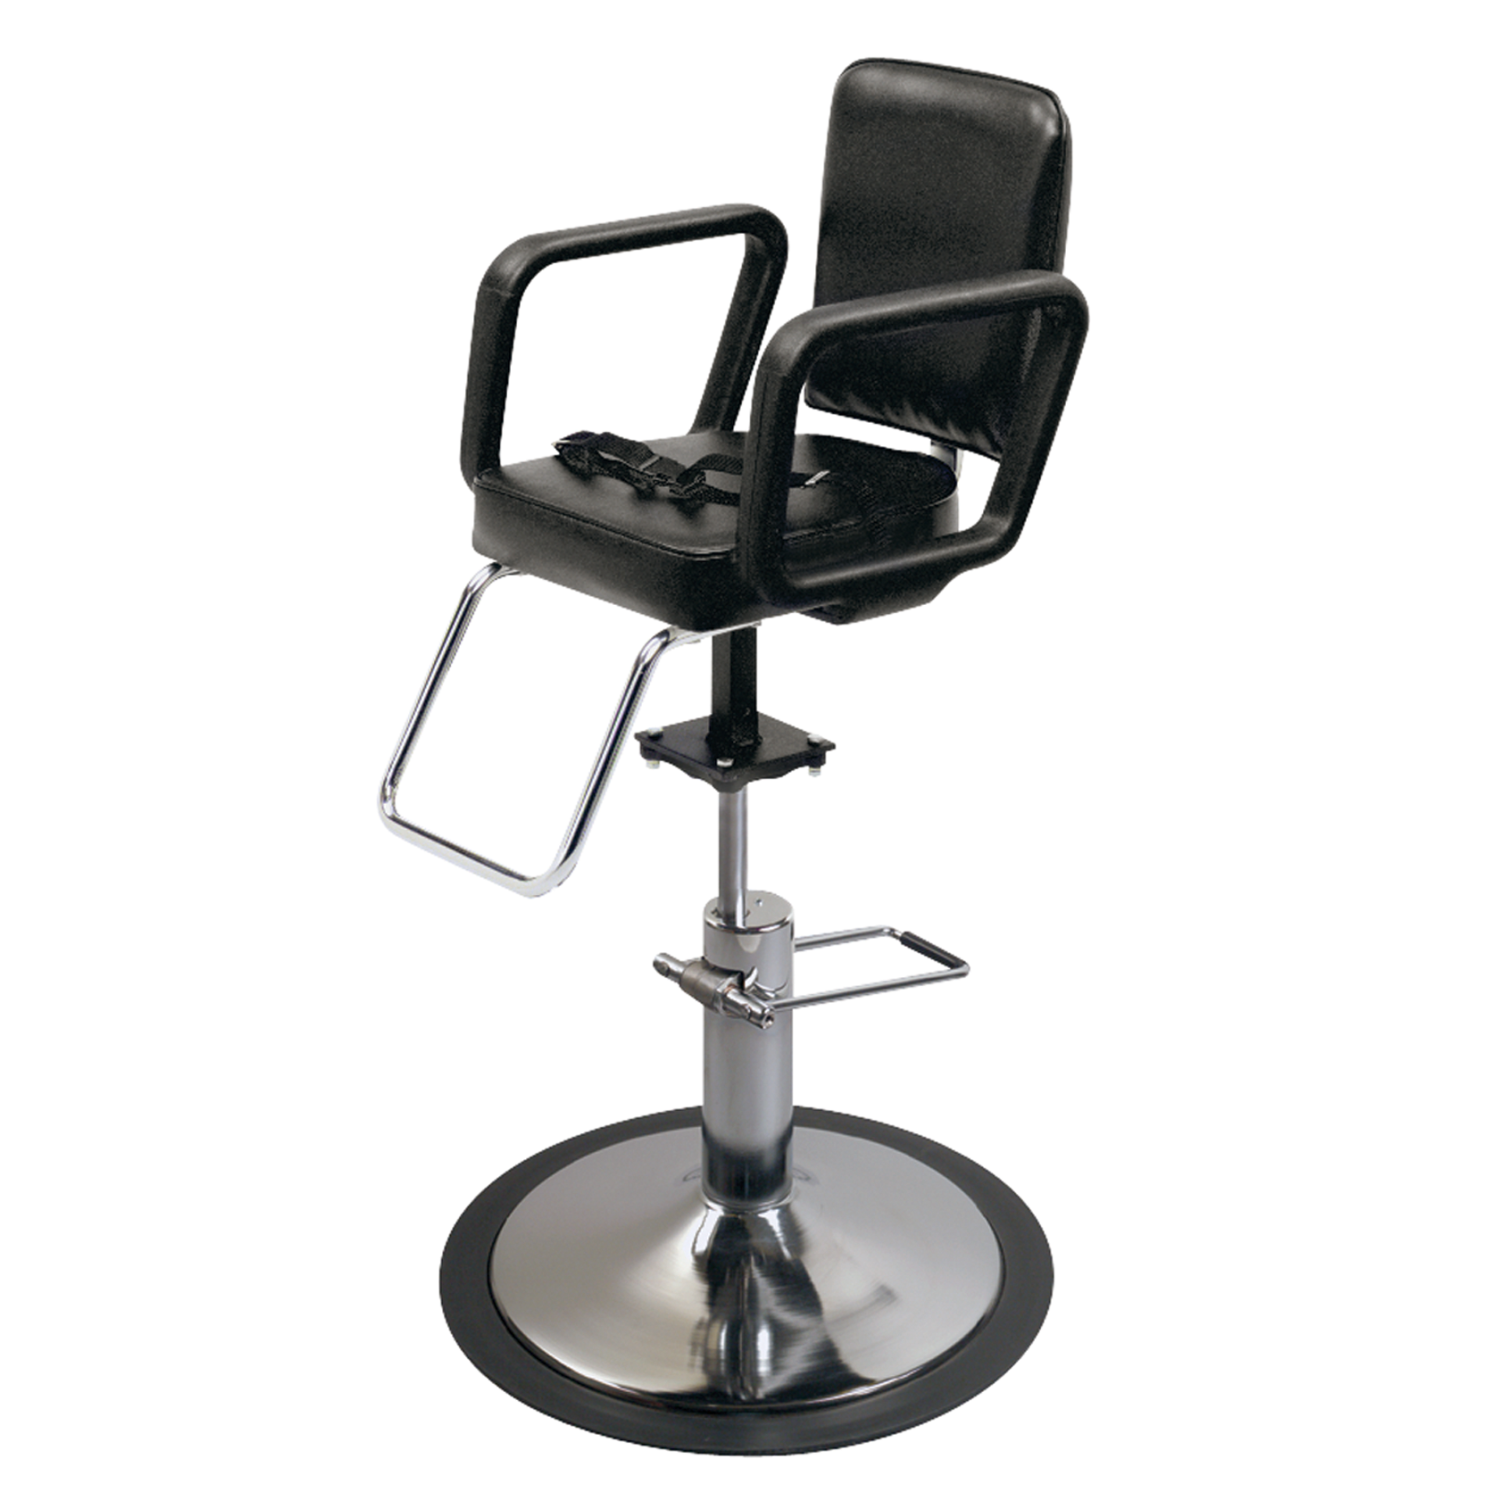 Pibbs 4370 Lambada Kids Hydraulic Styling Chair Salon Chairs